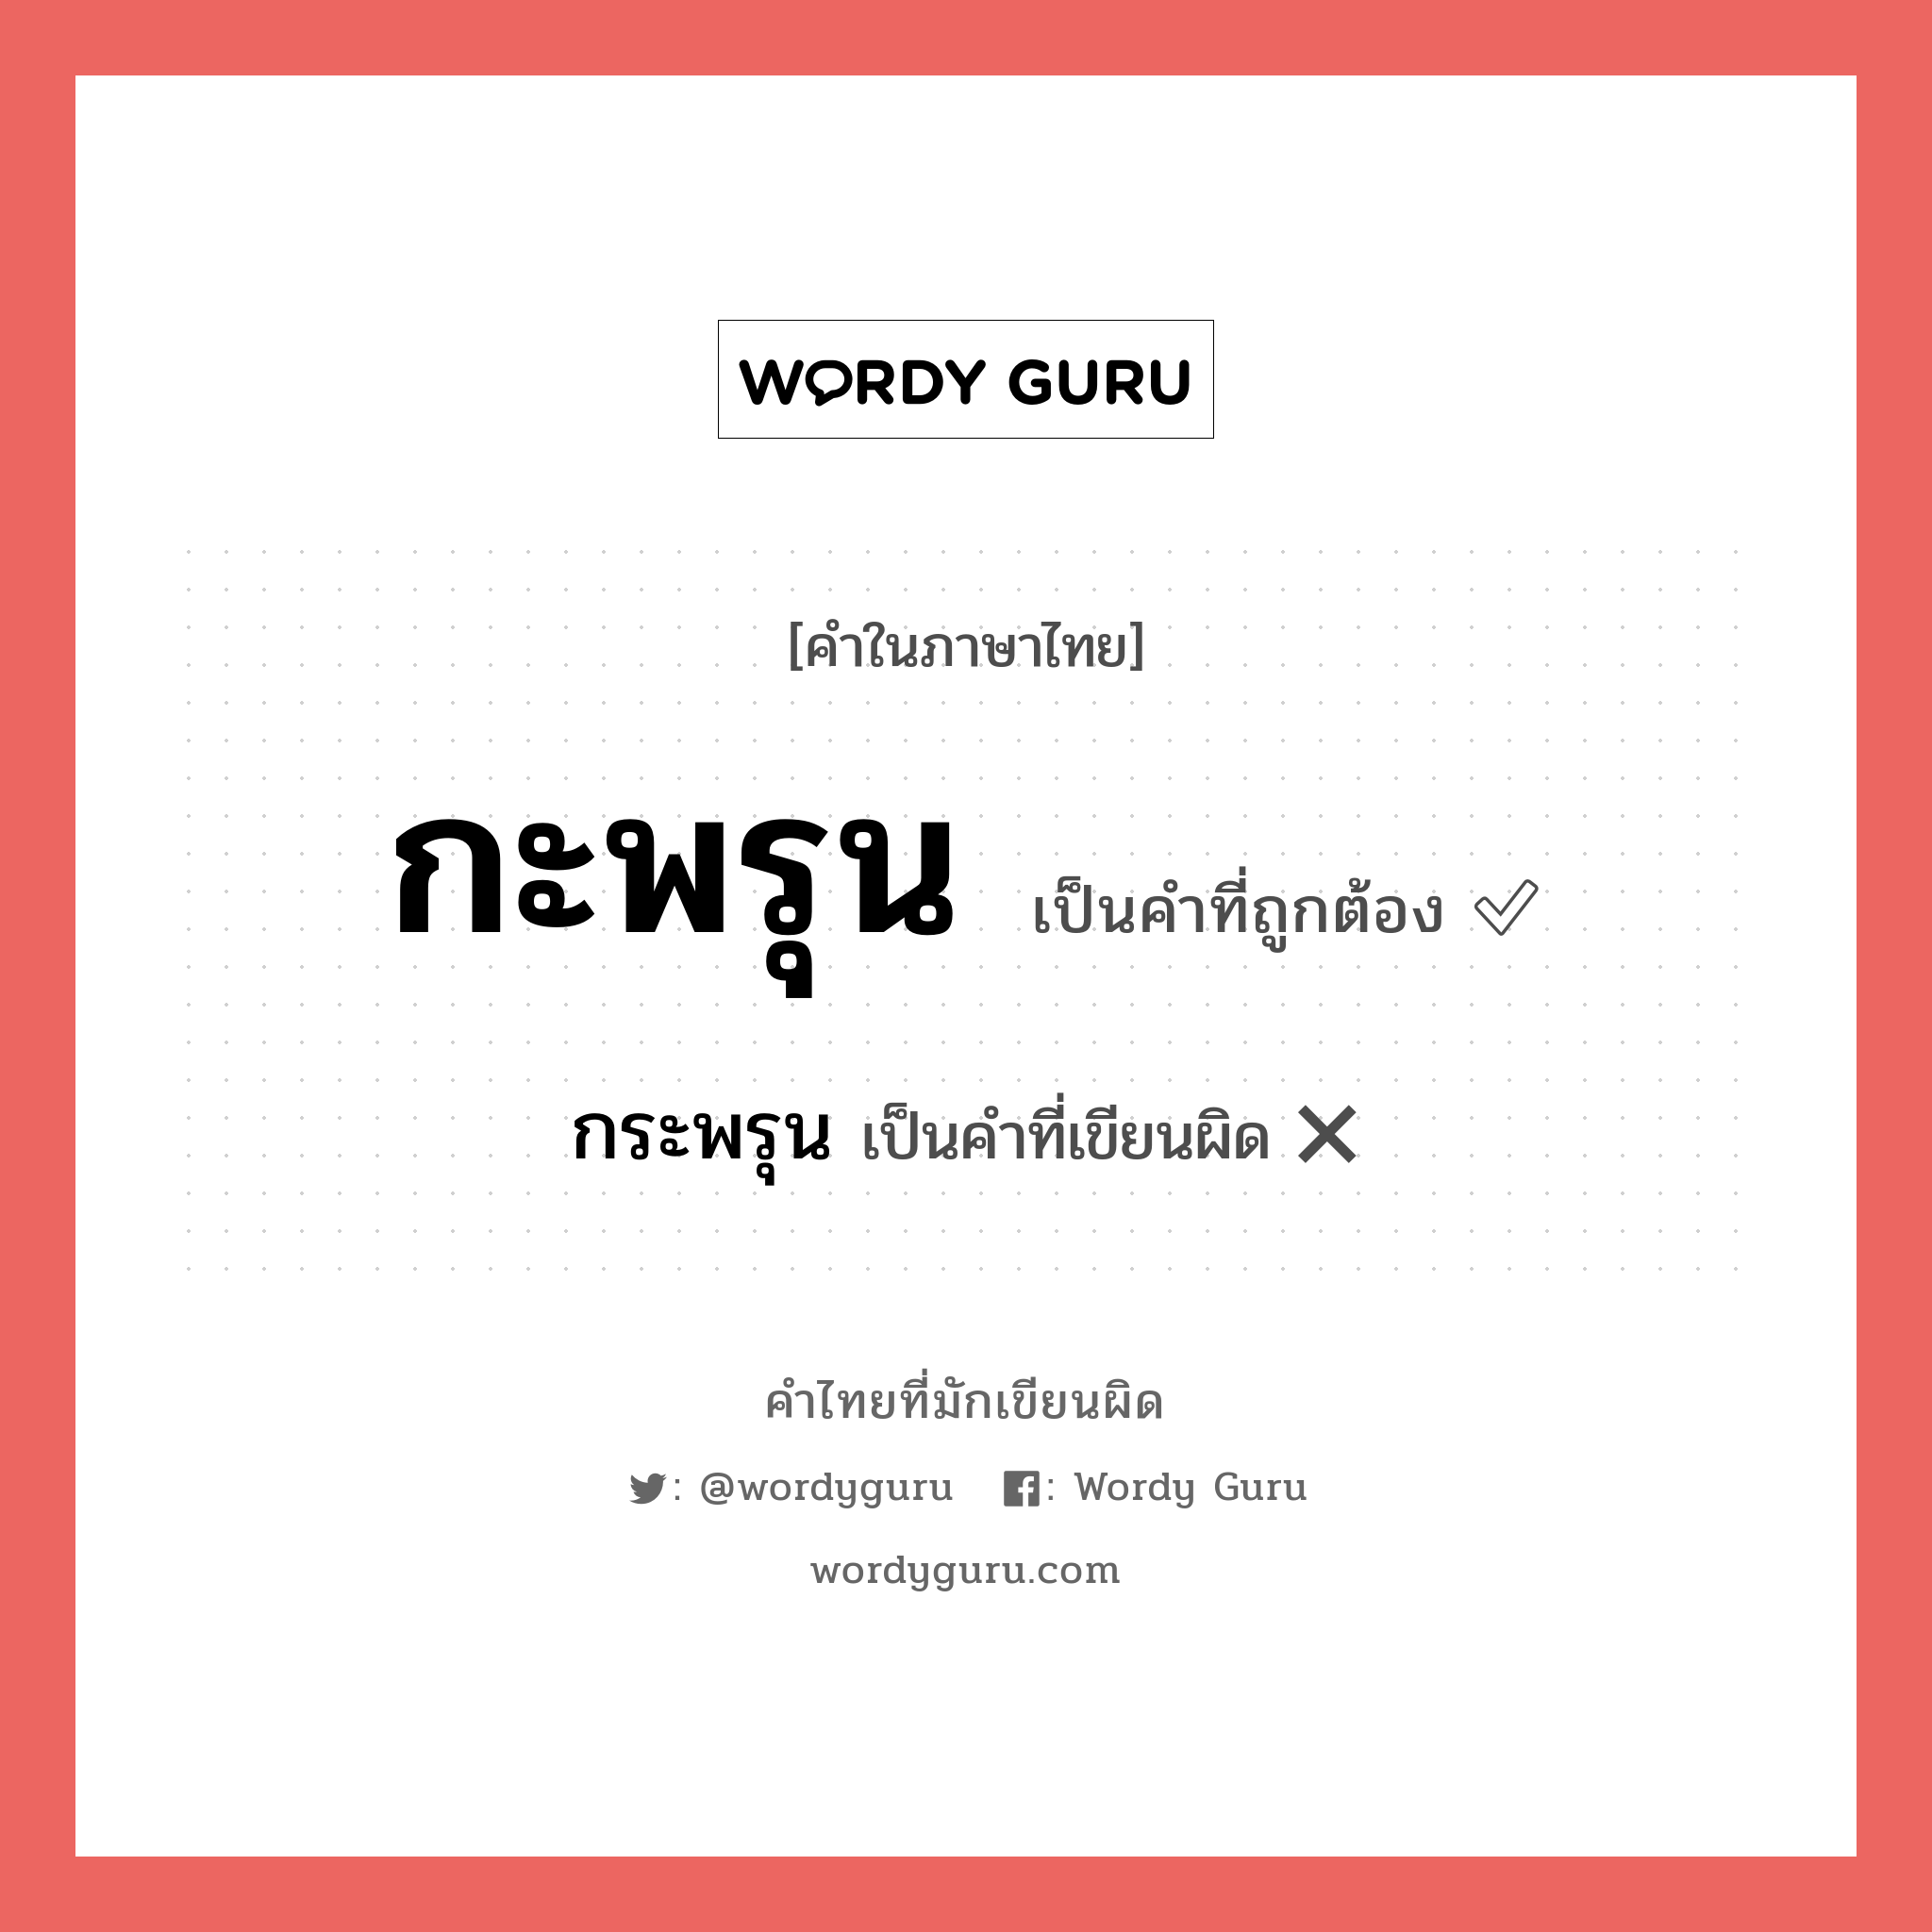 กะพรุน หรือ กระพรุน คำไหนเขียนถูก?, คำในภาษาไทยที่มักเขียนผิด กะพรุน คำที่ผิด ❌ กระพรุน